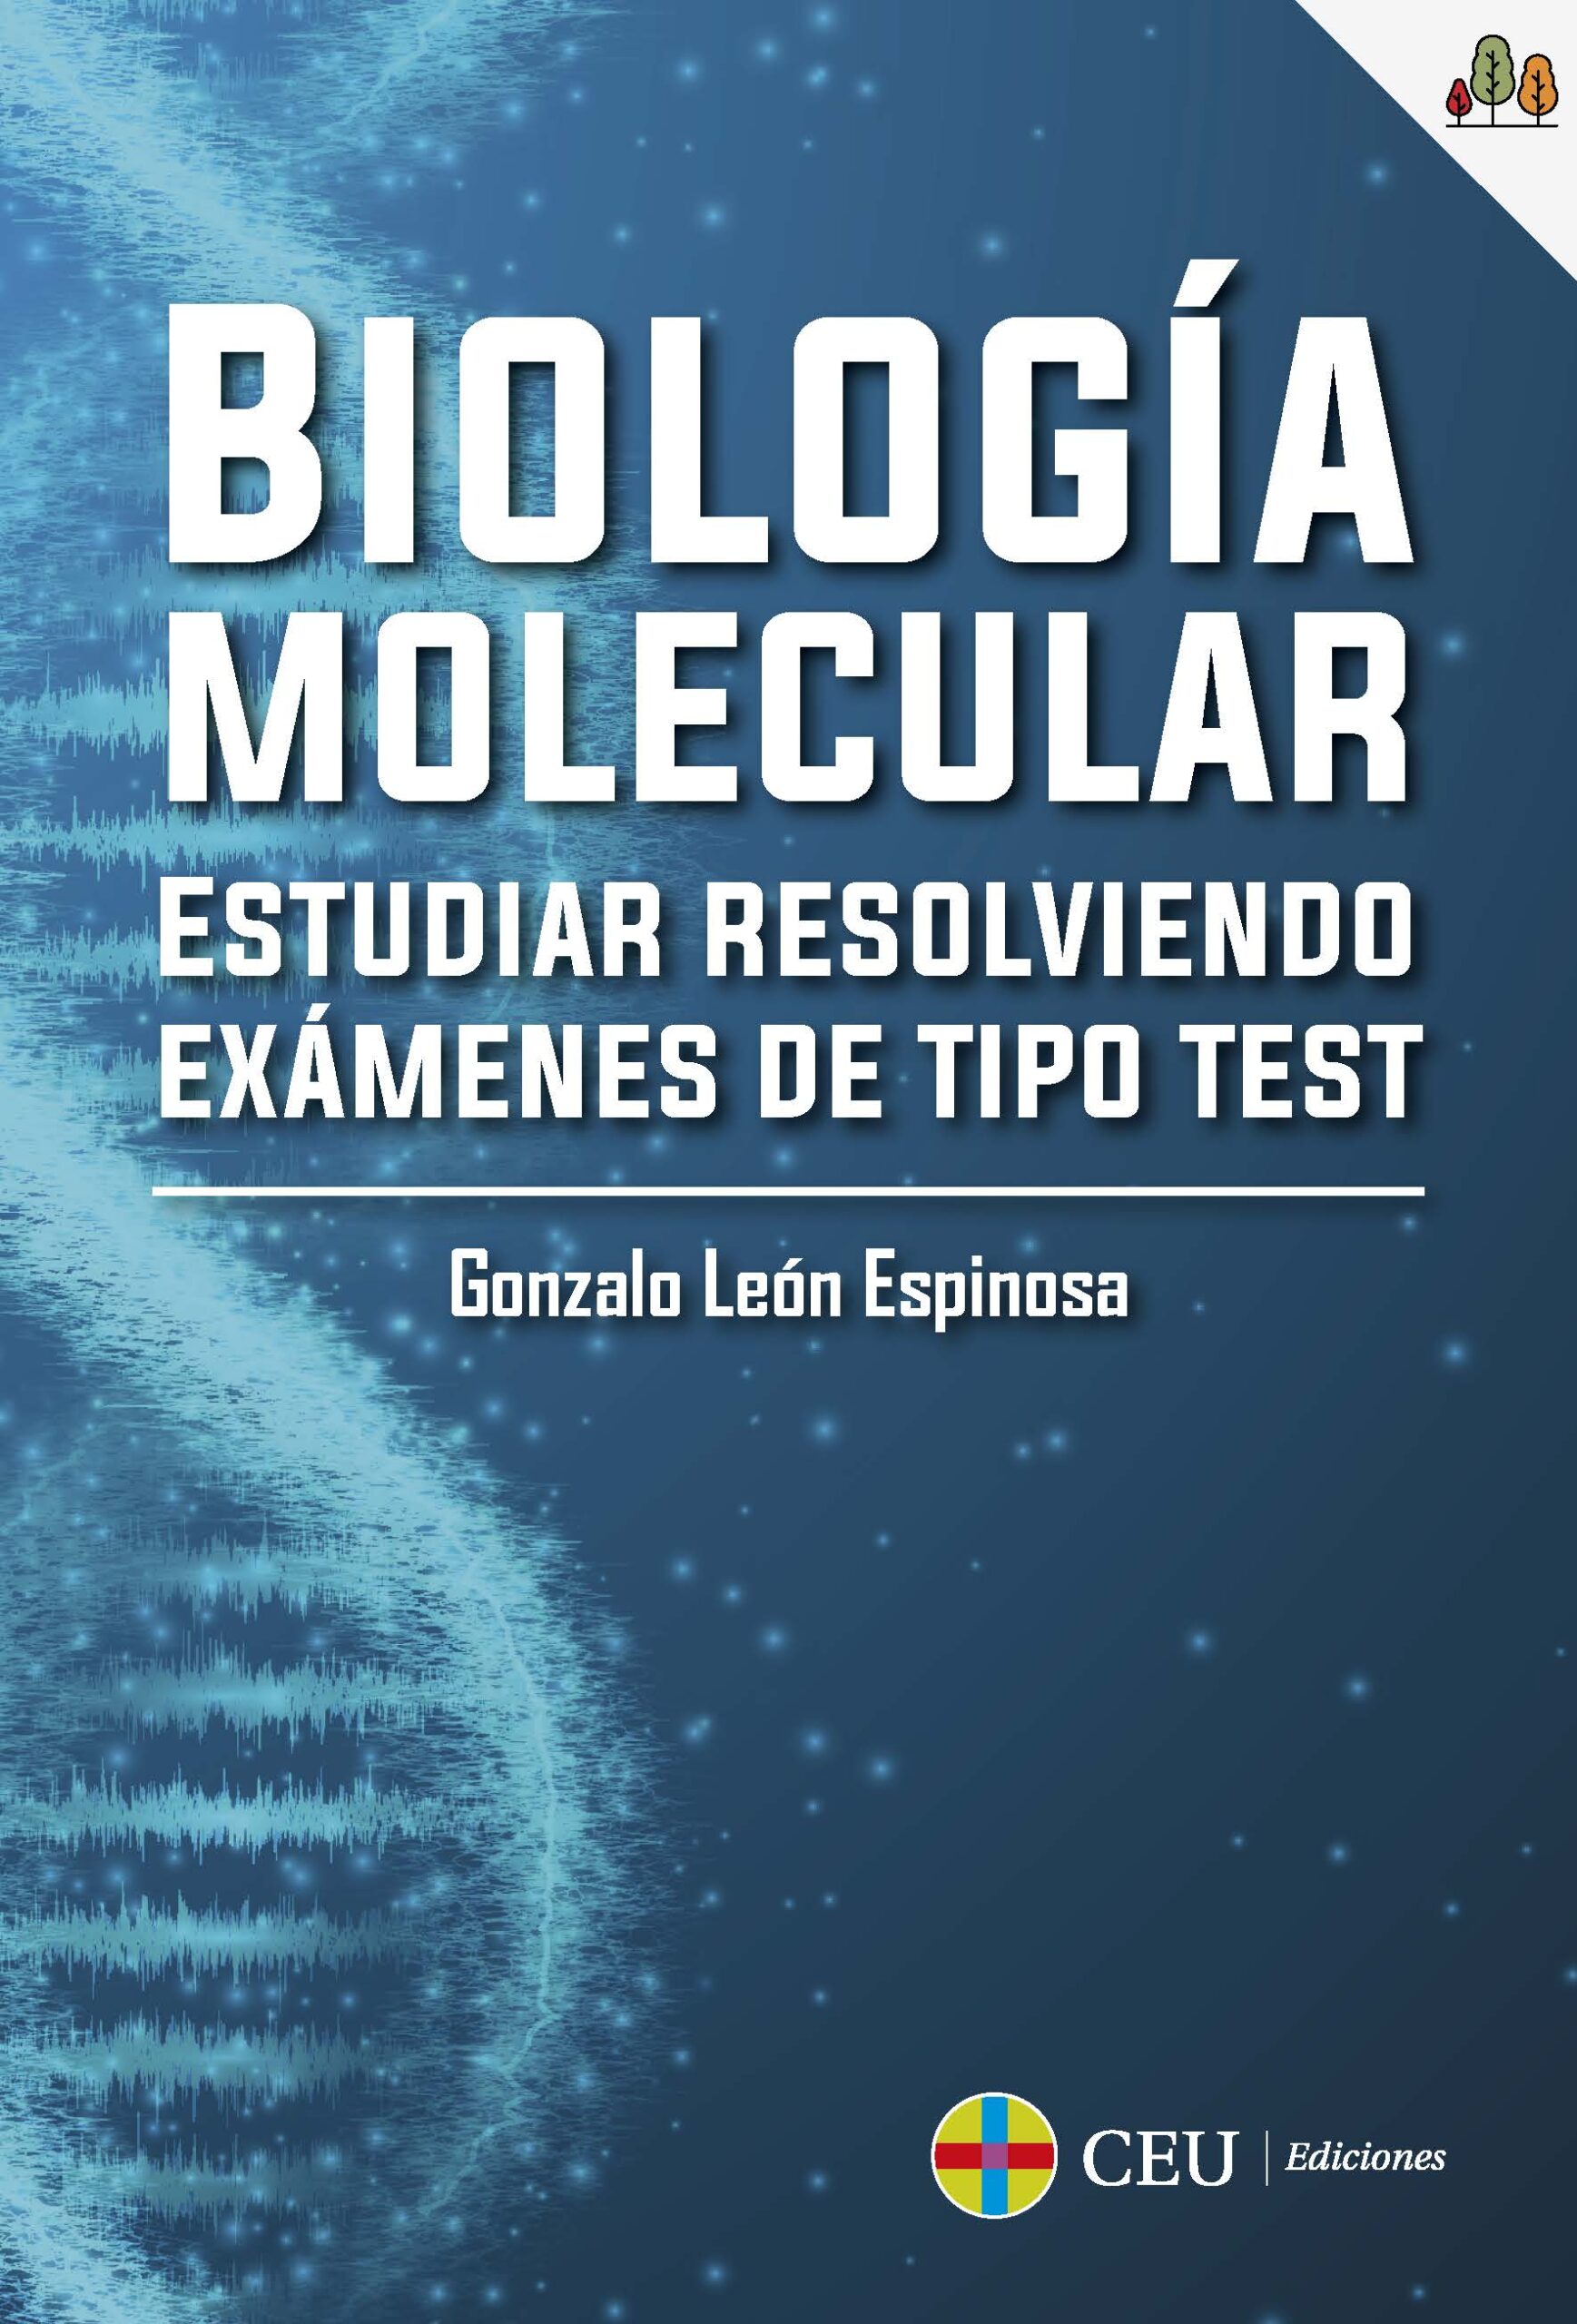 Imagen de portada del libro Biología molecular